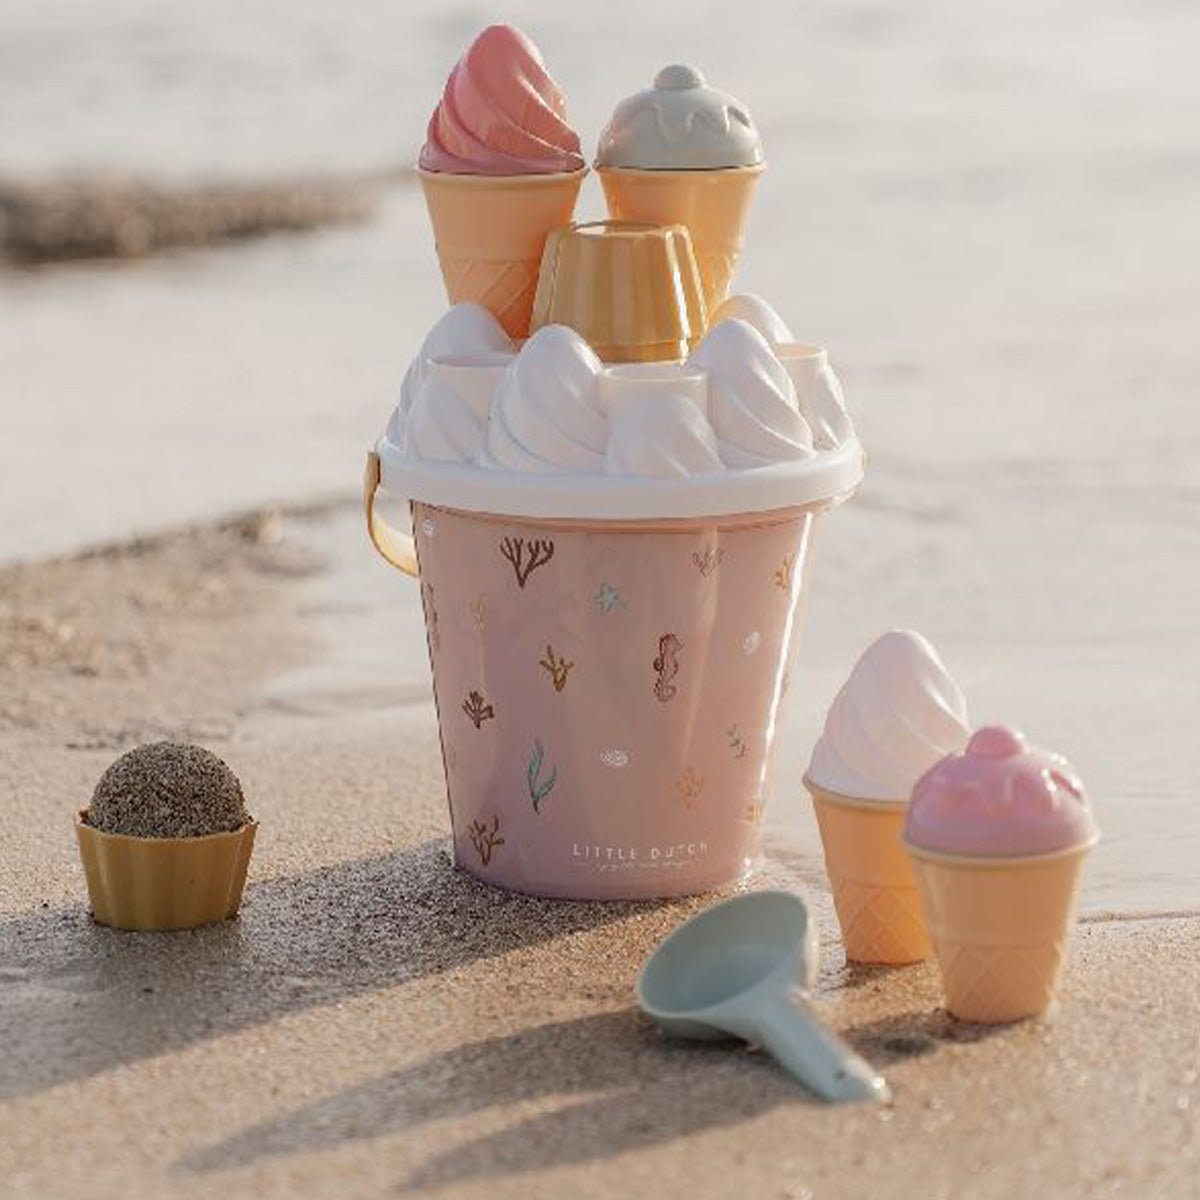 Maak de lekkerste ijsjes van zand met deze superleuke 14-delige ijsjes strandset van het merk Little Dutch. Met deze geweldige strandset kan je kindje de lekkerste zandijsjes maken. VanZus